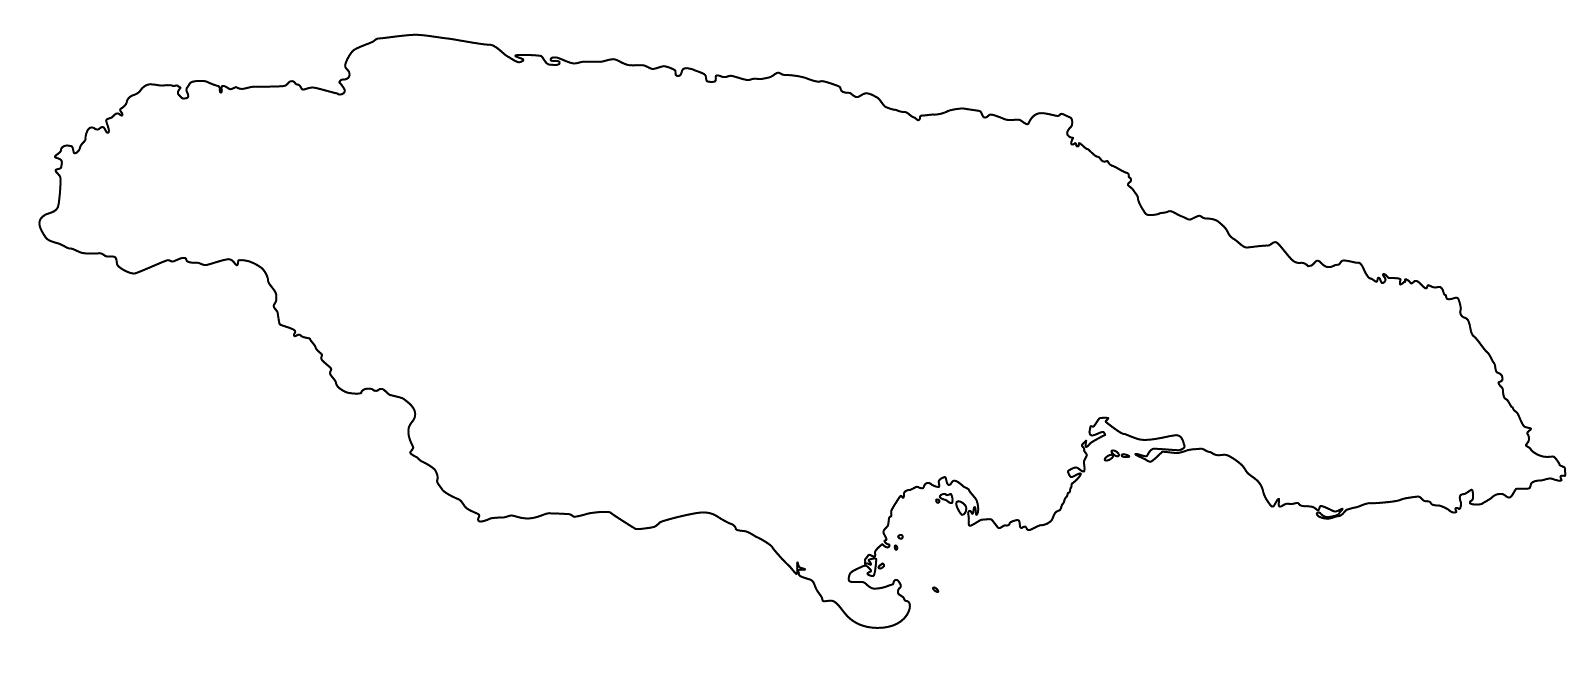 Sketch Map Of Jamaica Sketch Map Of Jamaica - Map Of Sketch Jamaica (Caribbean - Americas)